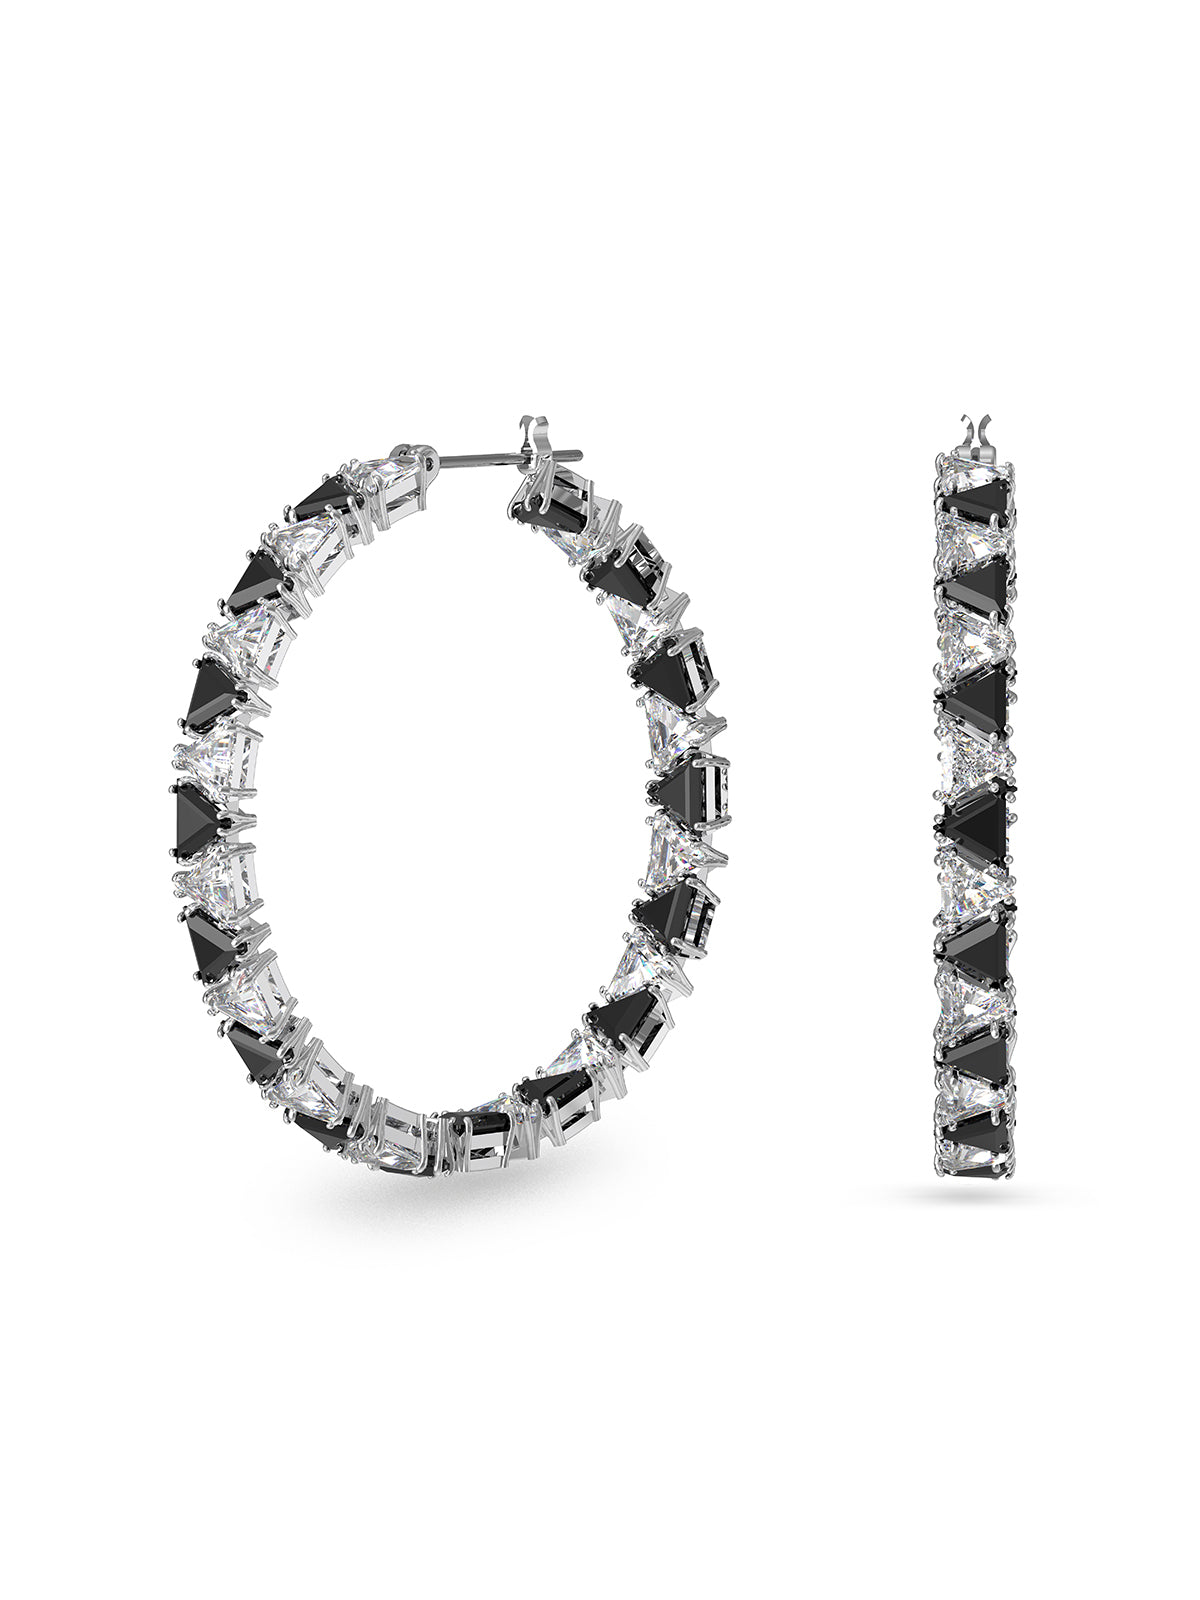 SALE Swarovski Ortyx Black & White Crystal Hoop Earrings 5616911